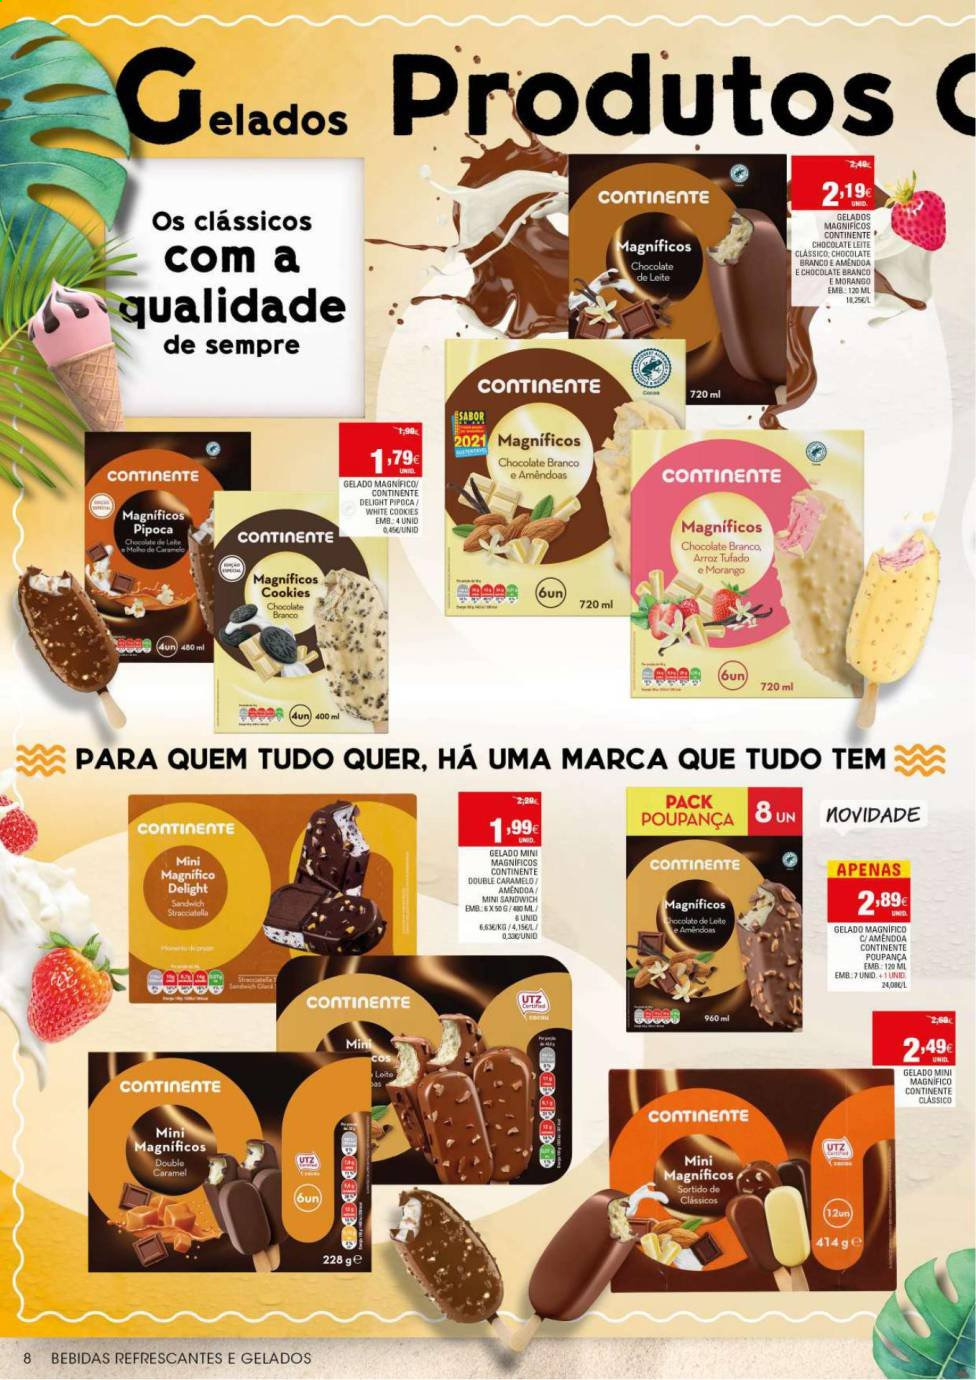 thumbnail - Folheto Continente - 15.6.2021 - 27.6.2021 - Produtos em promoção - sanduiche, chocolate, chocolate branco, popcorn, pipoca, arroz. Página 8.